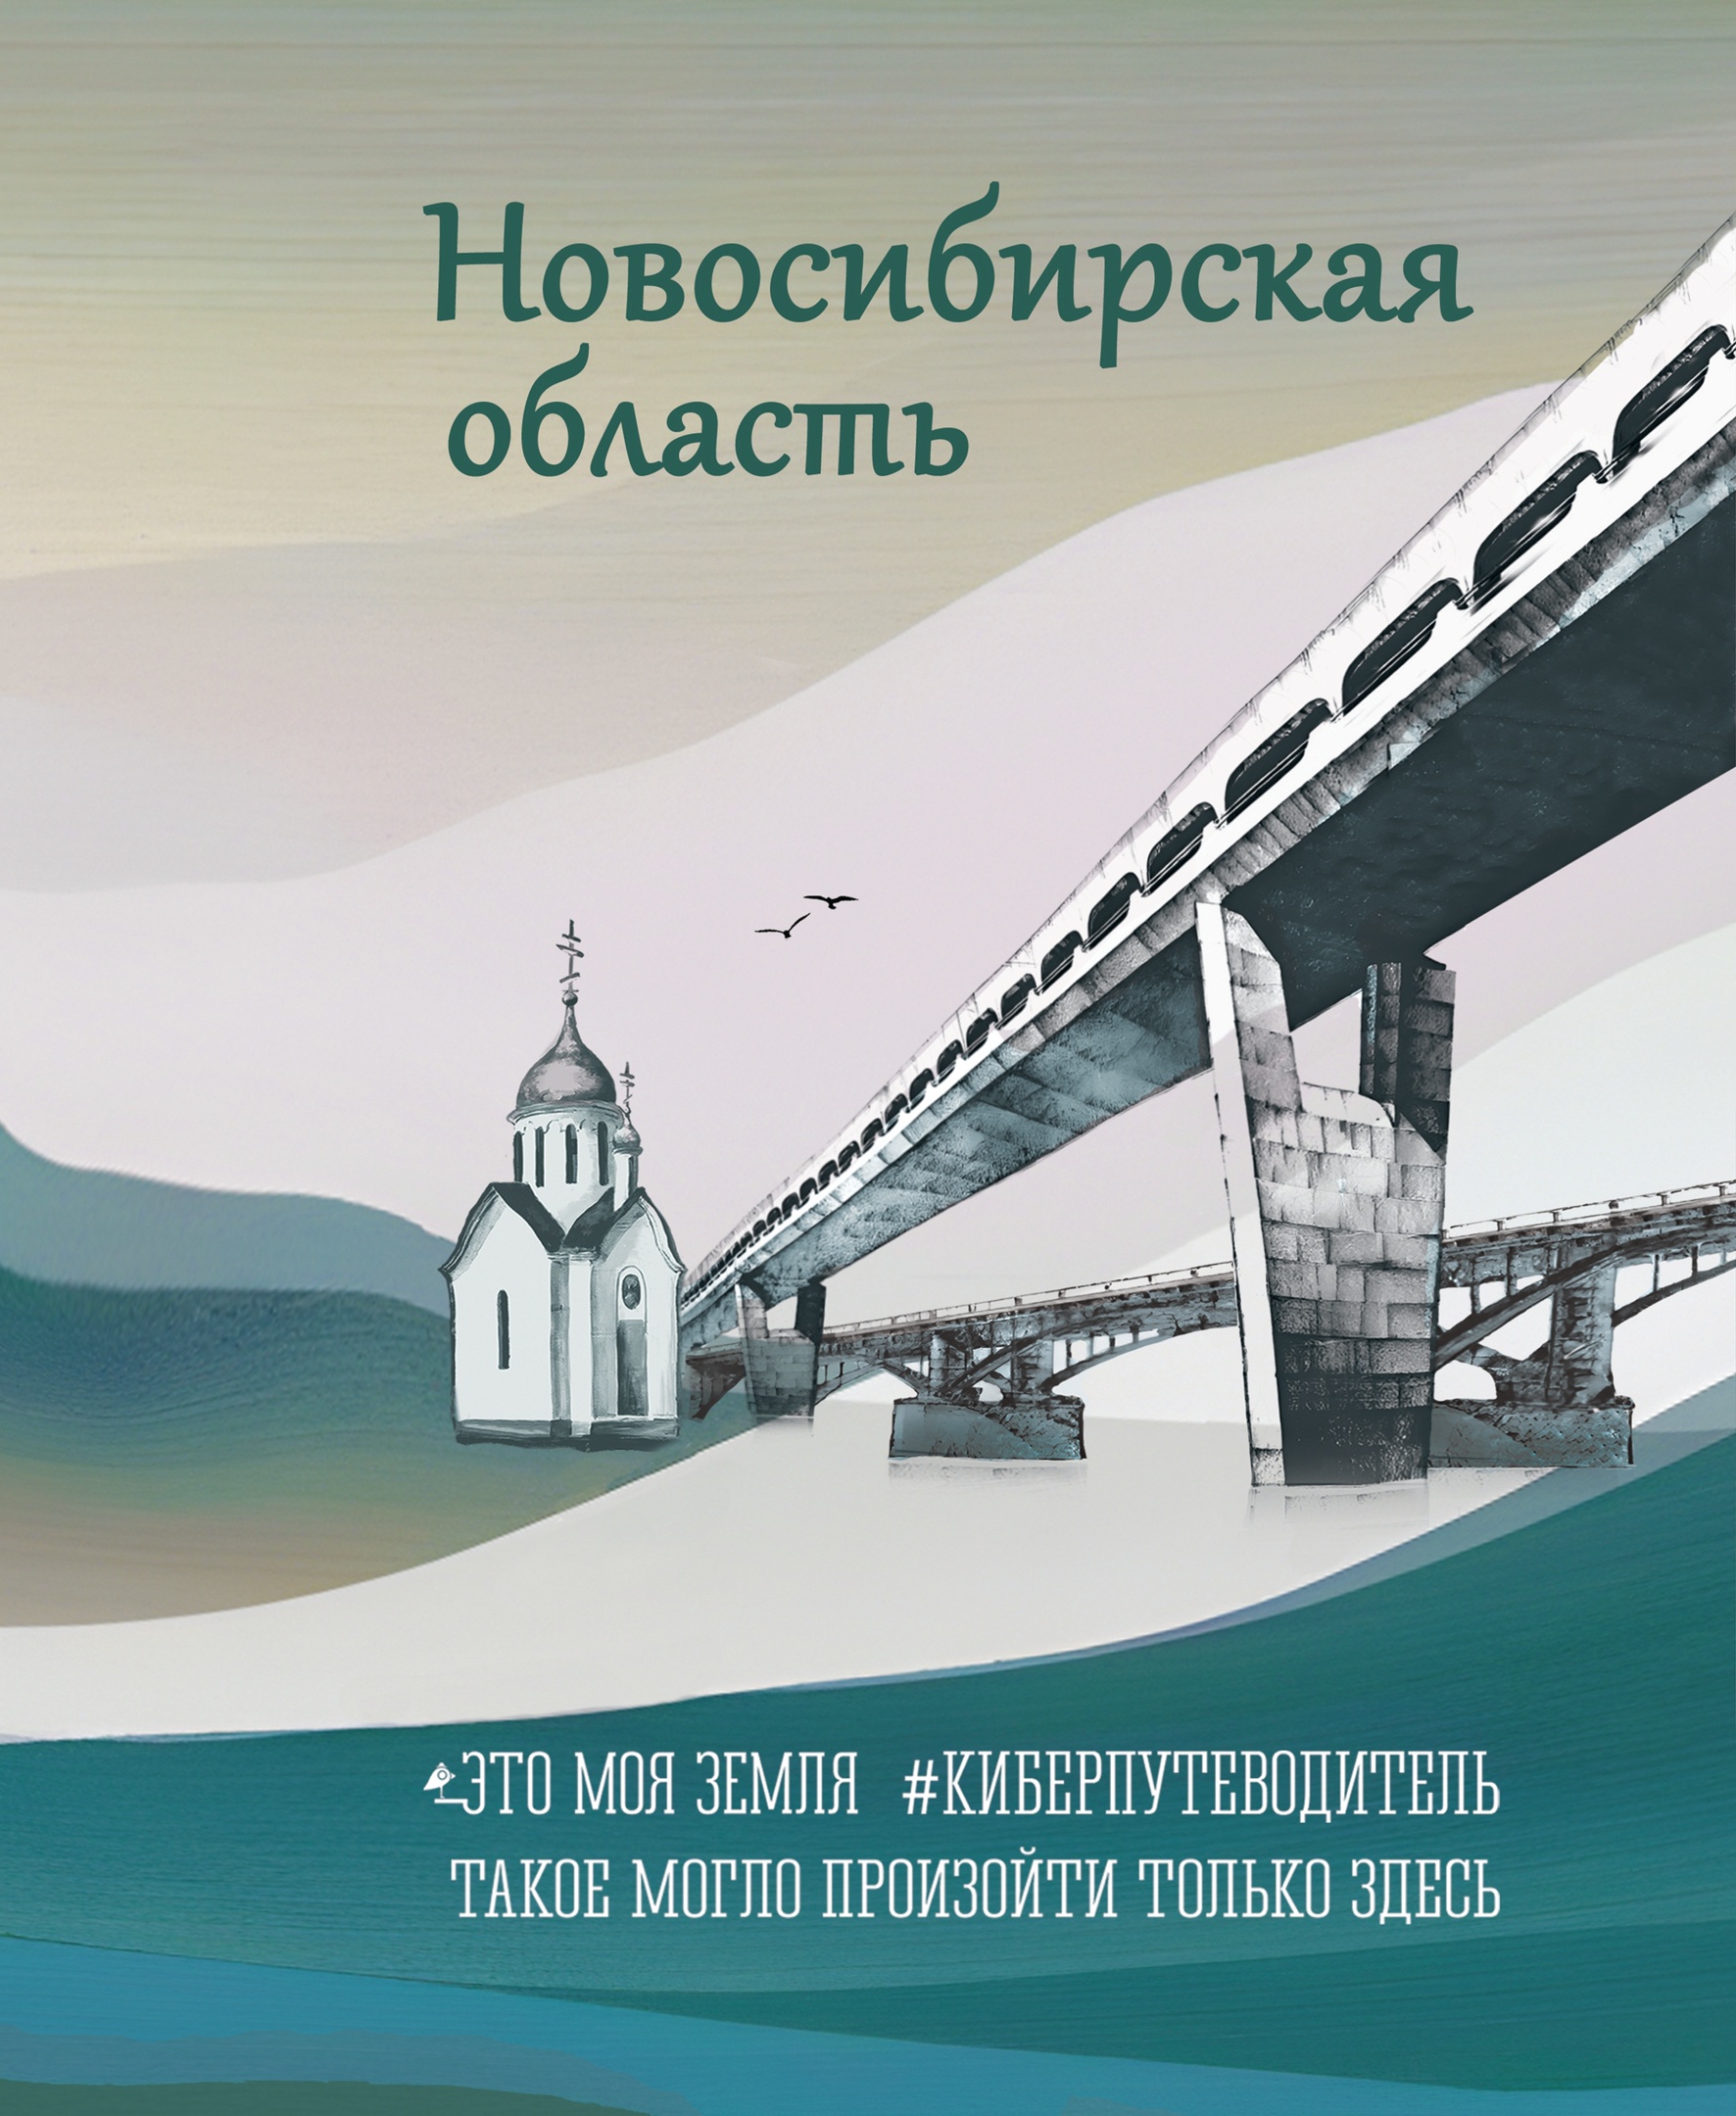 Вышел в свет электронный сборник легенд о Новосибирской области «Новосибирская область. Это моя земля»